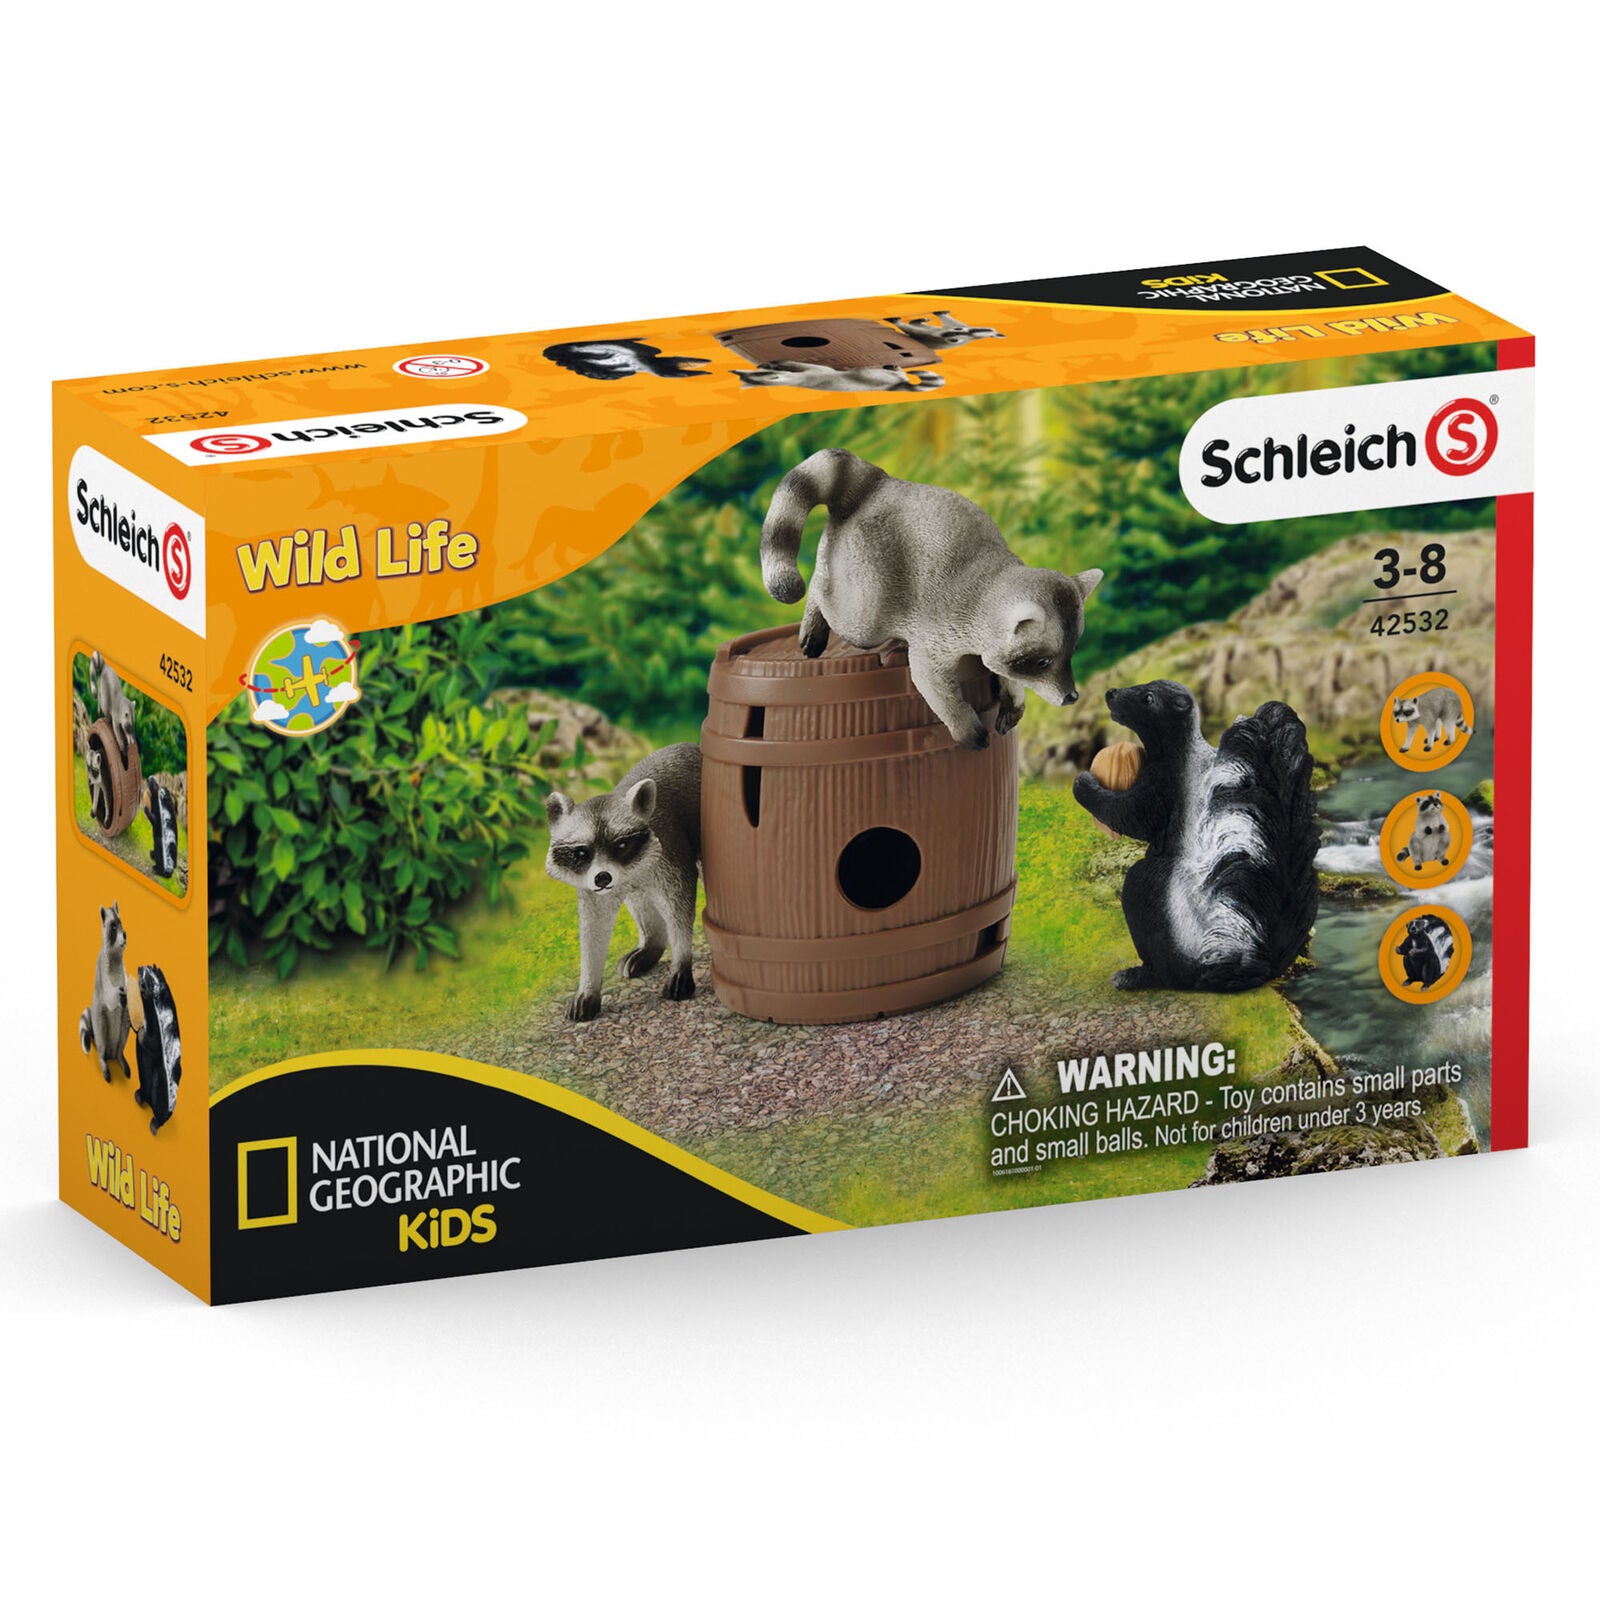 Schleich 42532 Nutty Mischief Skunk Wild Life Set National Geographic Kids 3yrs+